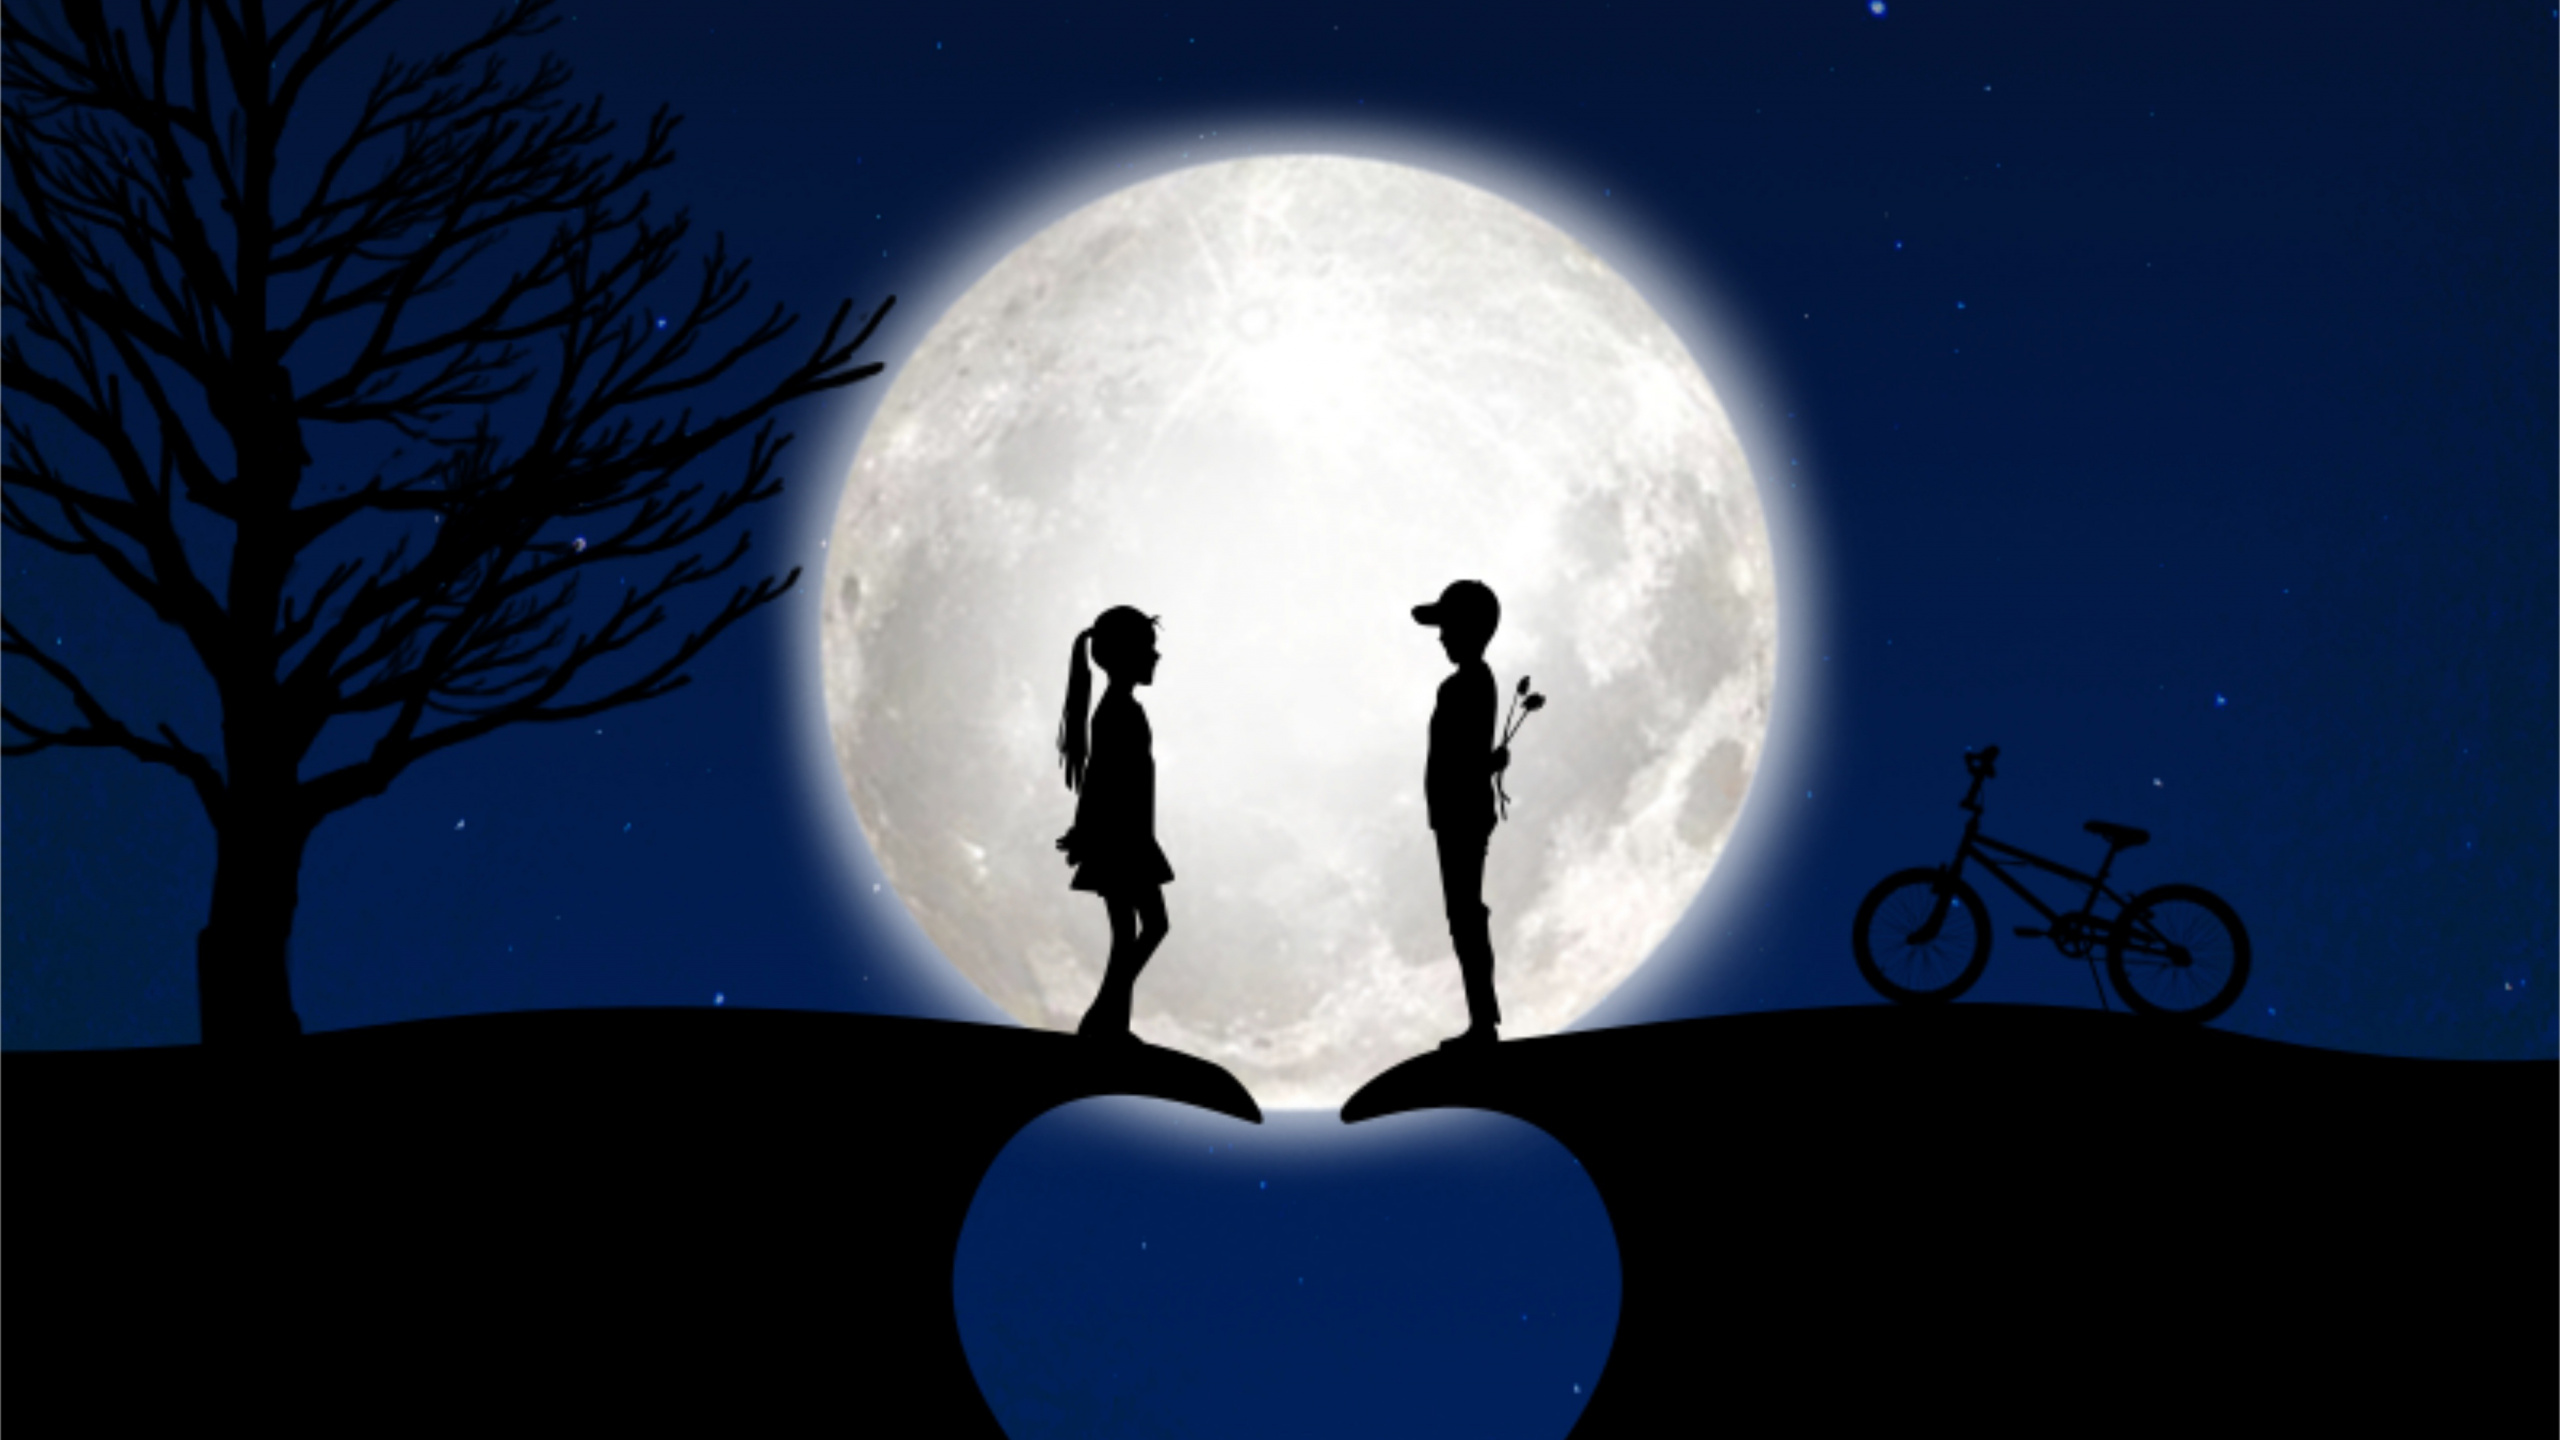 Mond, Licht, Mondlicht, Atmosphäre, Nacht. Wallpaper in 2560x1440 Resolution